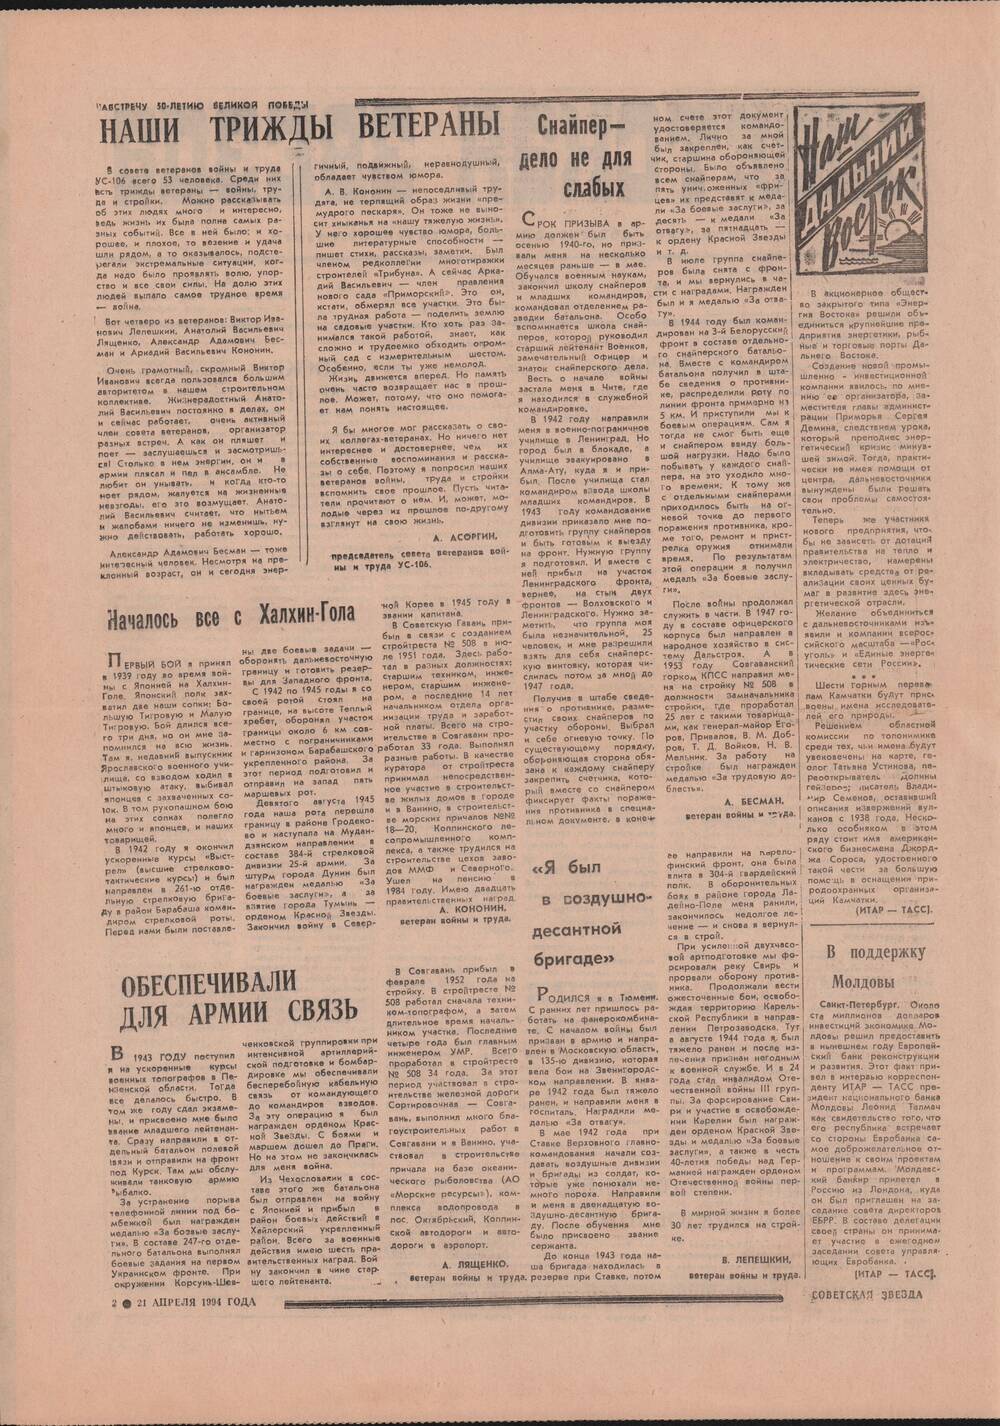 Газета «Советская звезда» № 77 (14326) от 21.04.1994 под рубрикой «50 лет Великой Победы».